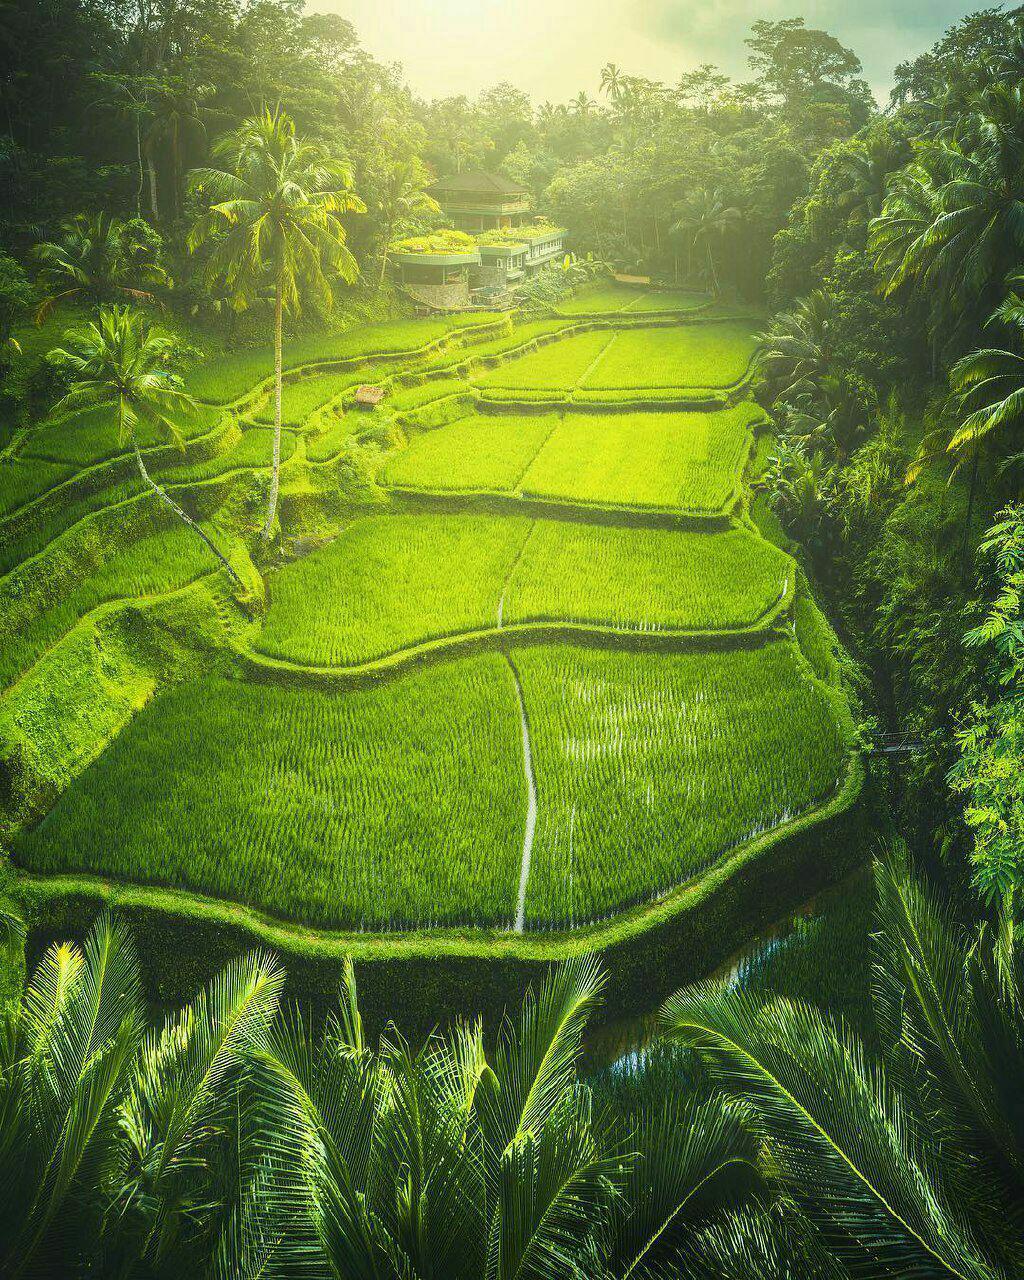 مزارع زیبای جزیره توریستی بالی اندونزی